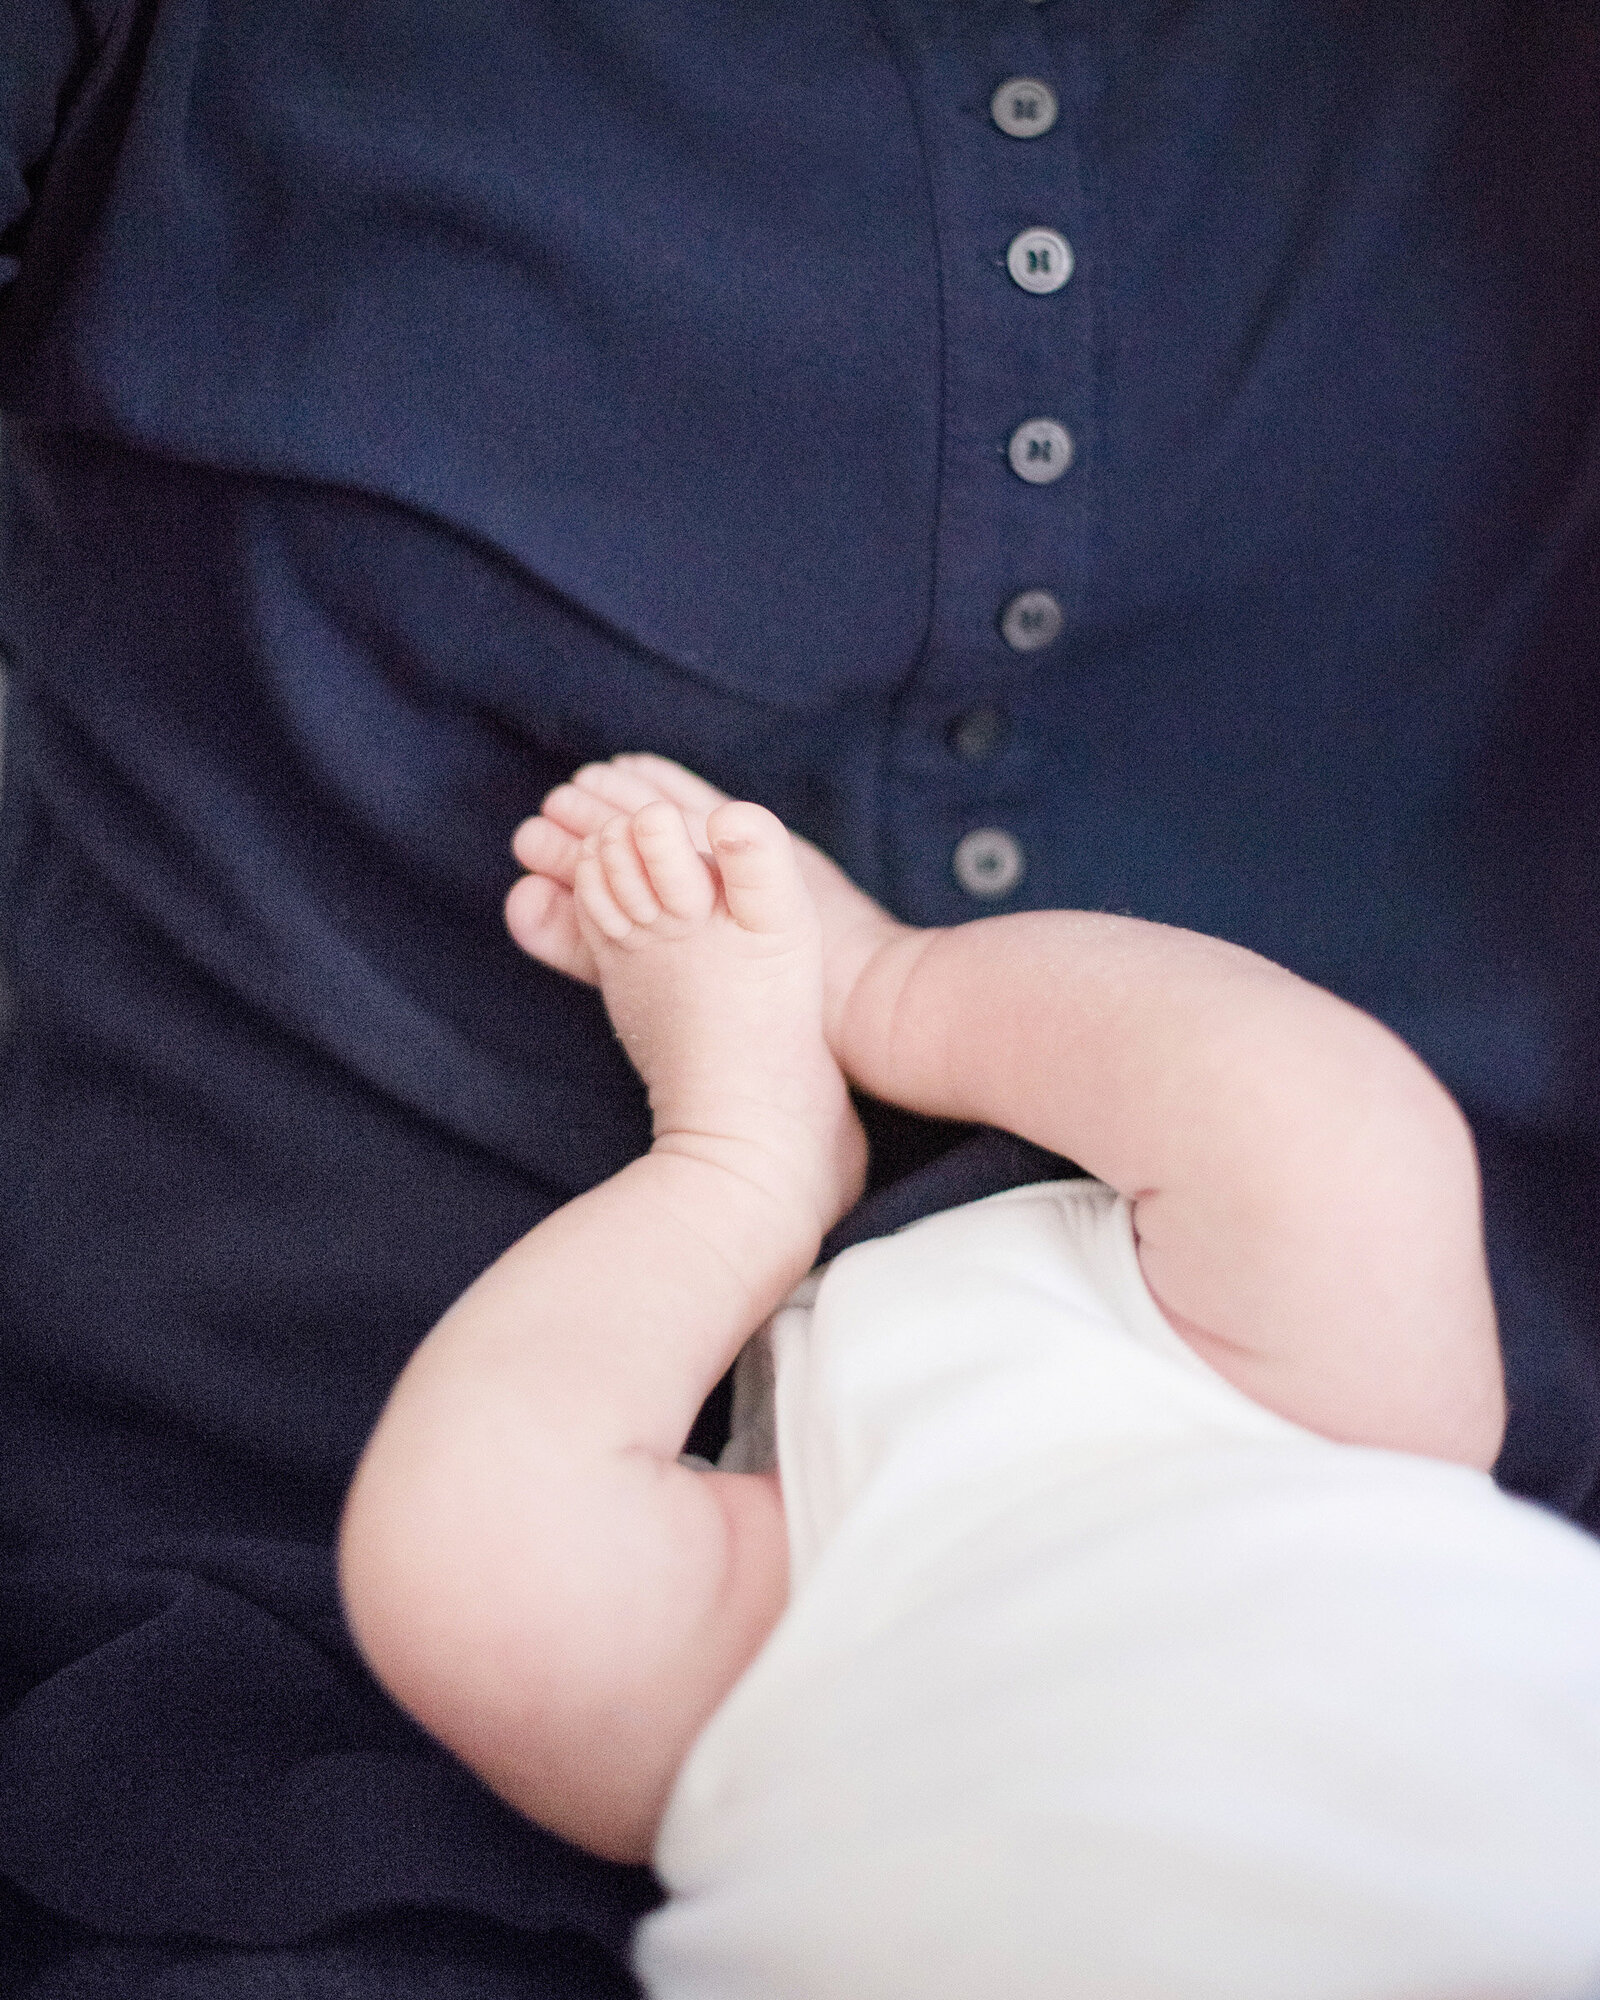 11-dutchess-hudson-valley-newborn-baby-portrait-photographer